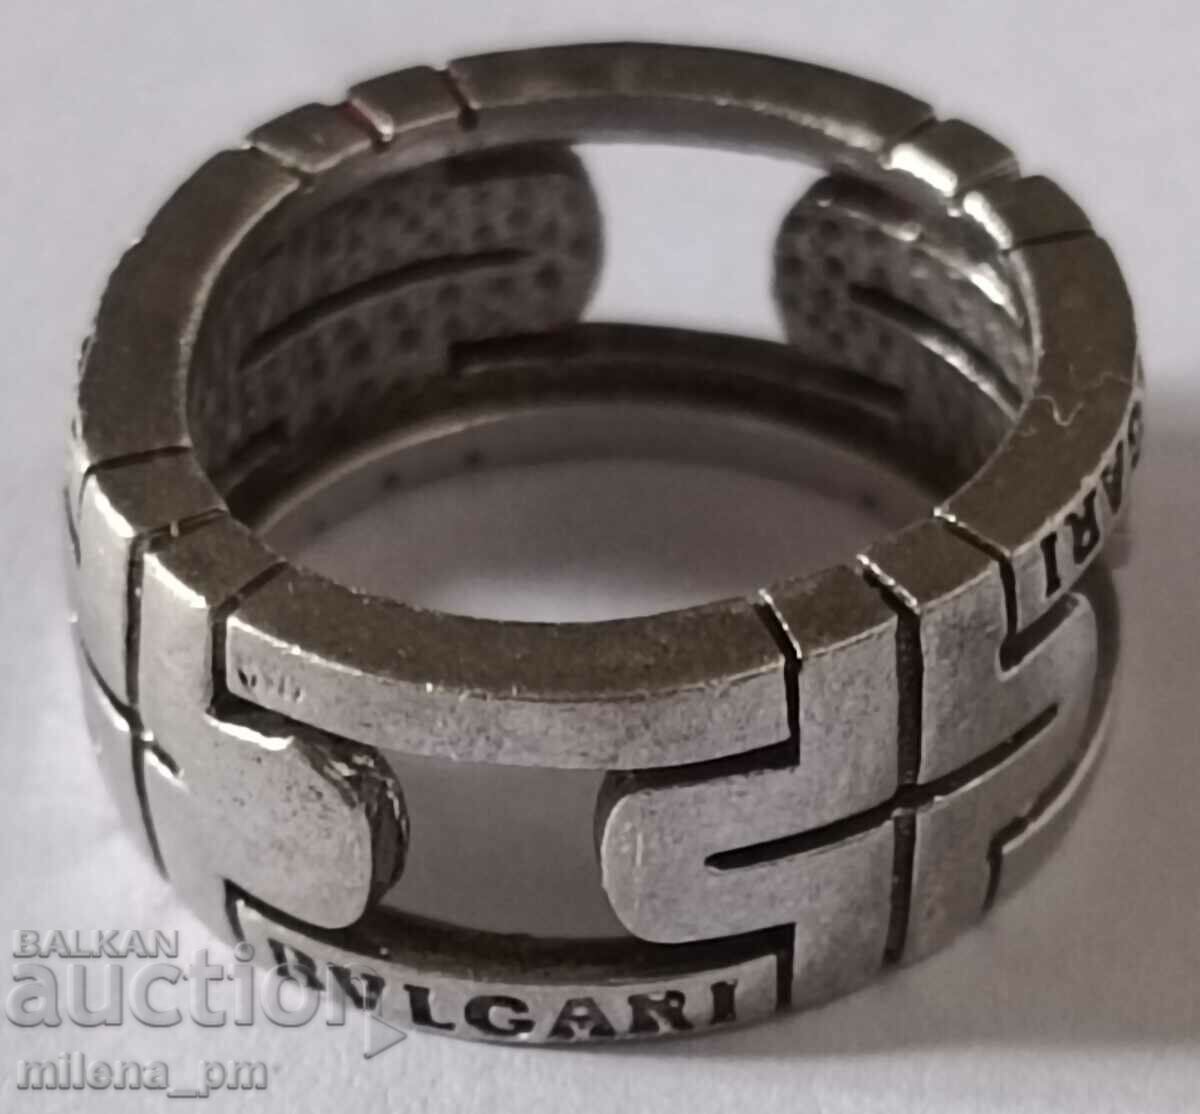 Ασημένιο δαχτυλίδι BULGARI